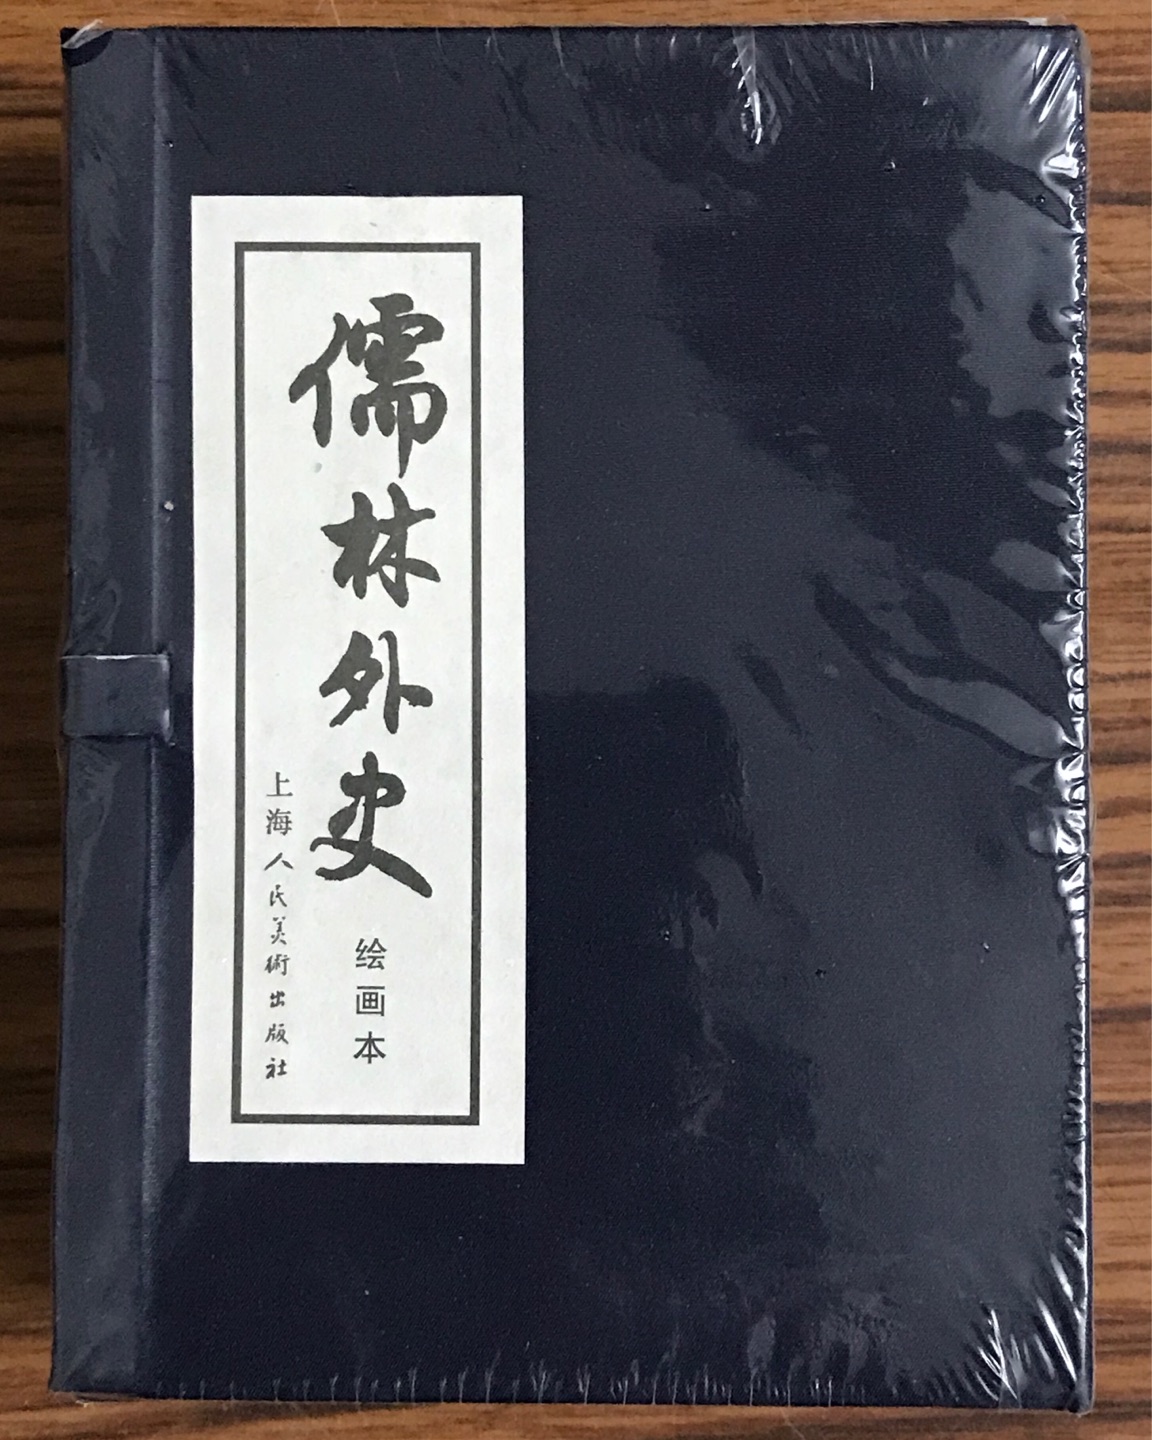 儒林外史小人书一套书收到，印刷质量好，包装不错。